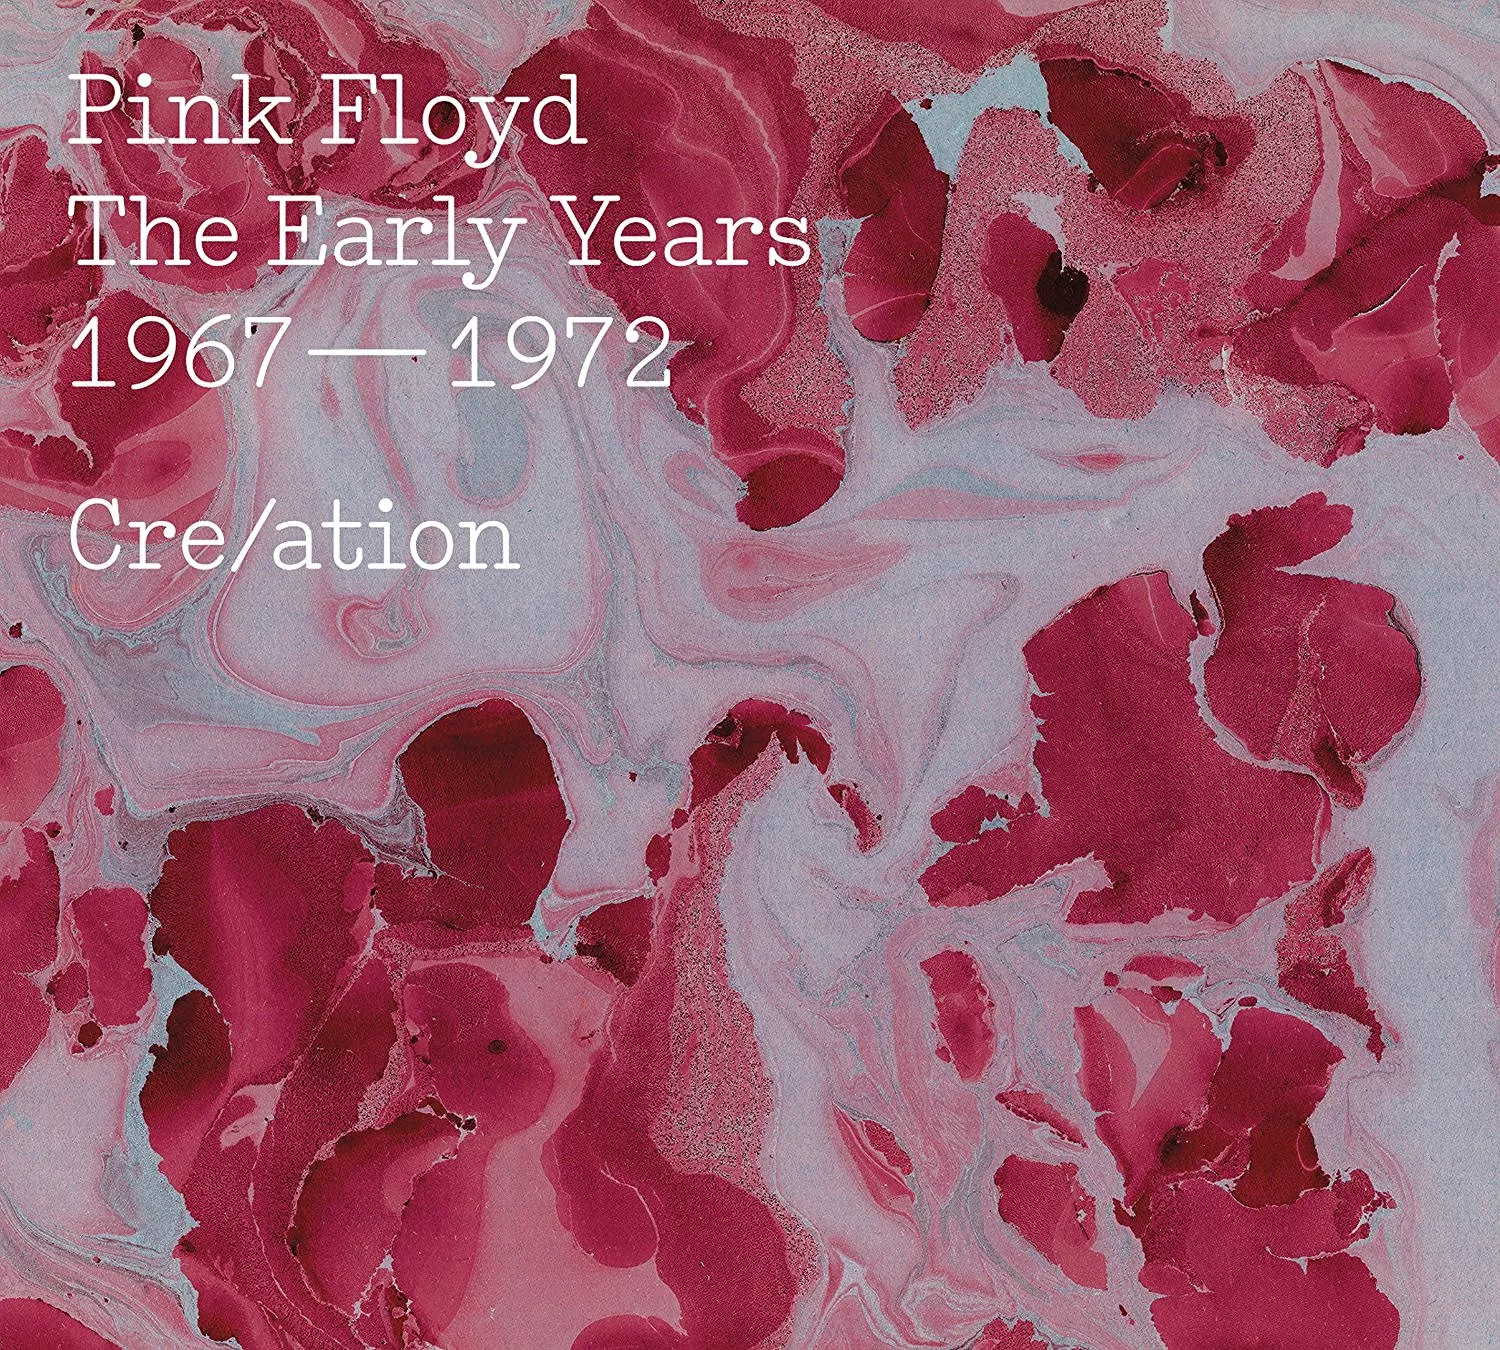 Pink Floyd – interessante smugkig i det gamle arbejdsværelse